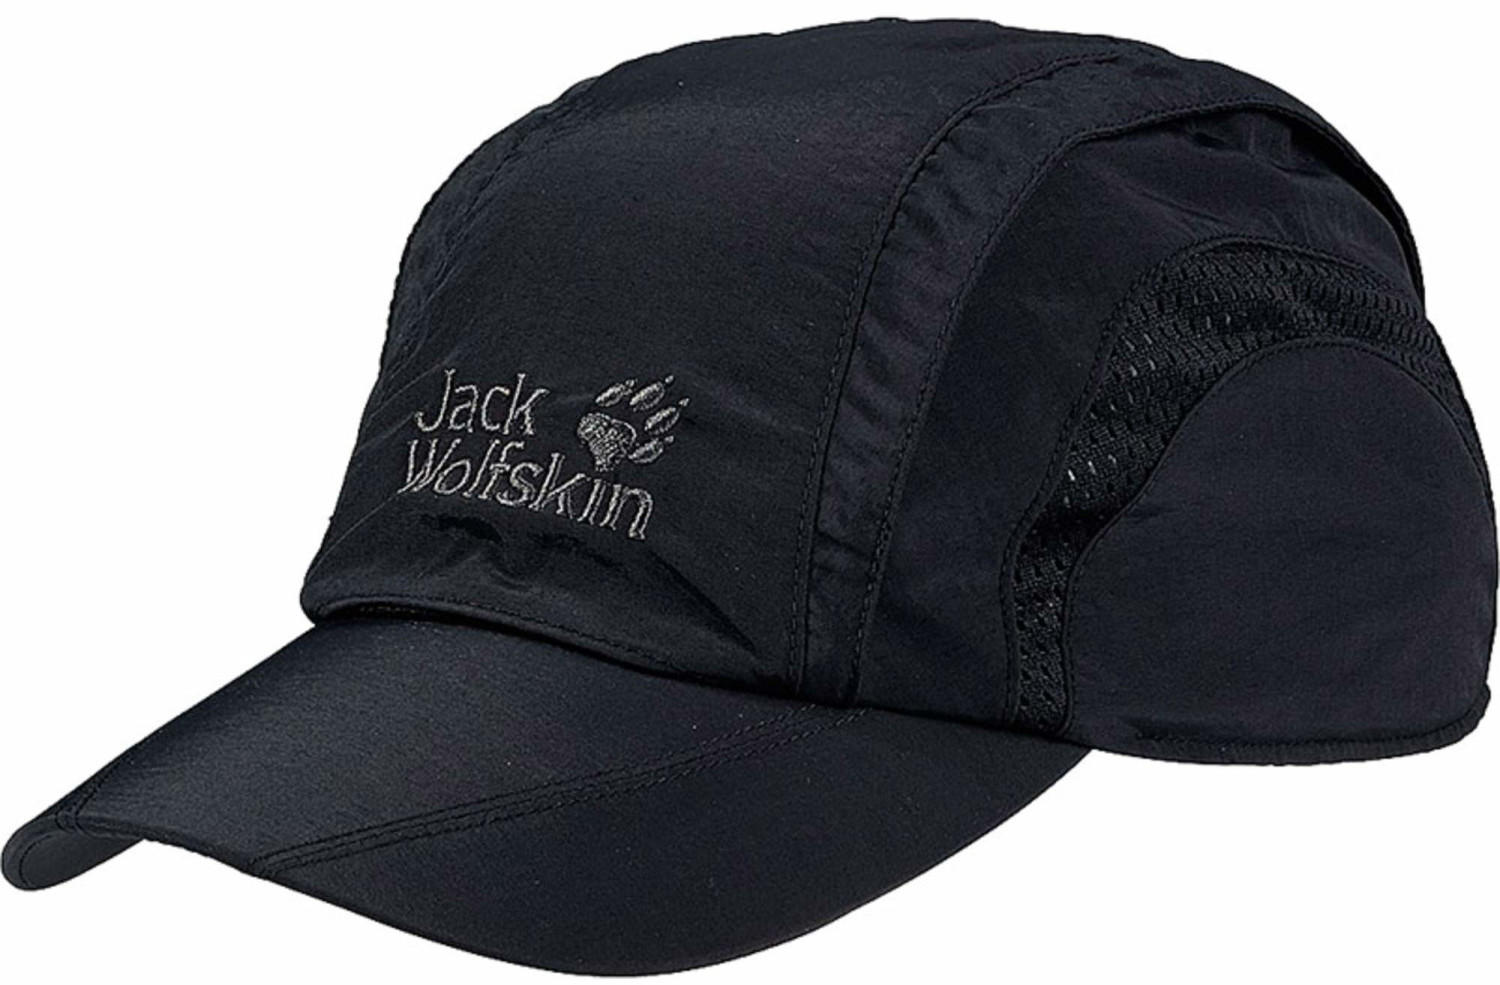 16,95 Angebote Jack Pro Cap Test TOP Wolfskin € ab 2023) black (Oktober Vent